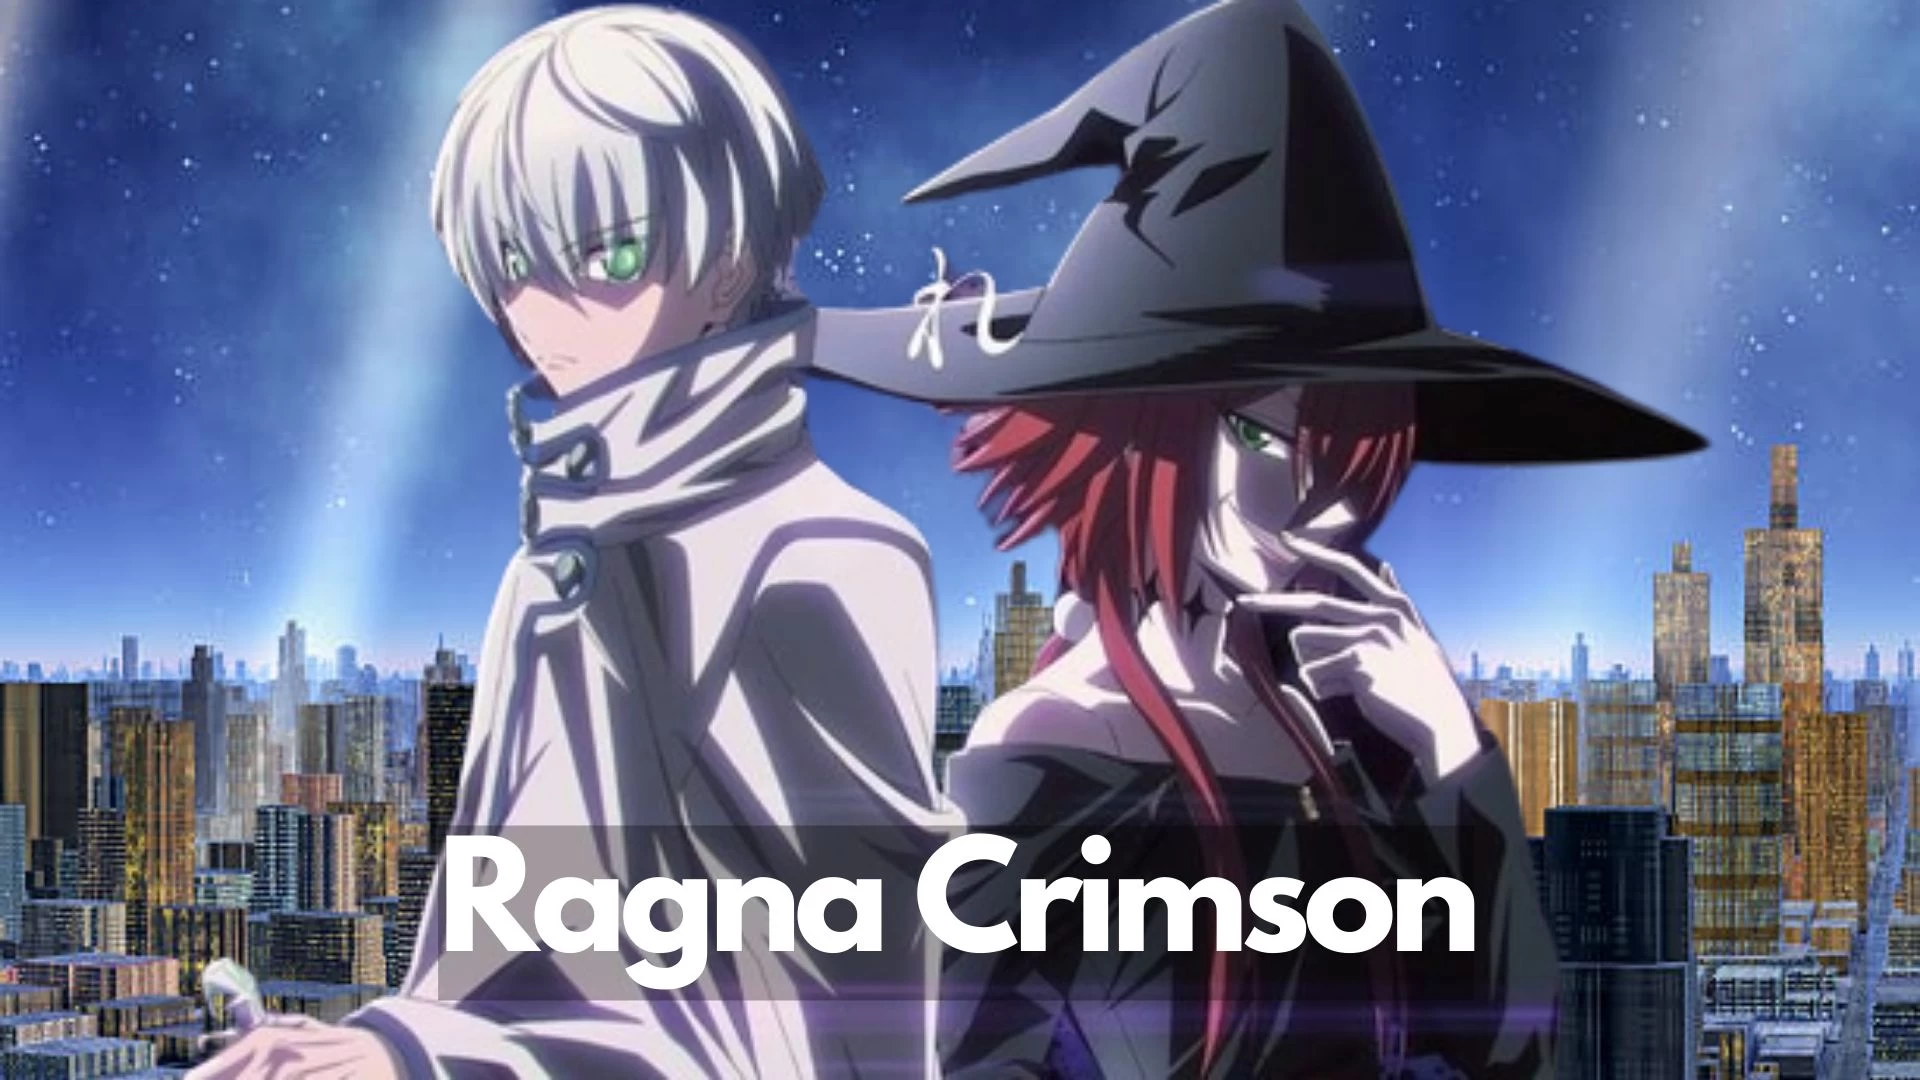 ¿Dónde ver el anime Ragna Crimson?  Ragna Crimson Temporada 1 Episodio 3 Fecha de lanzamiento, hora, trama y más